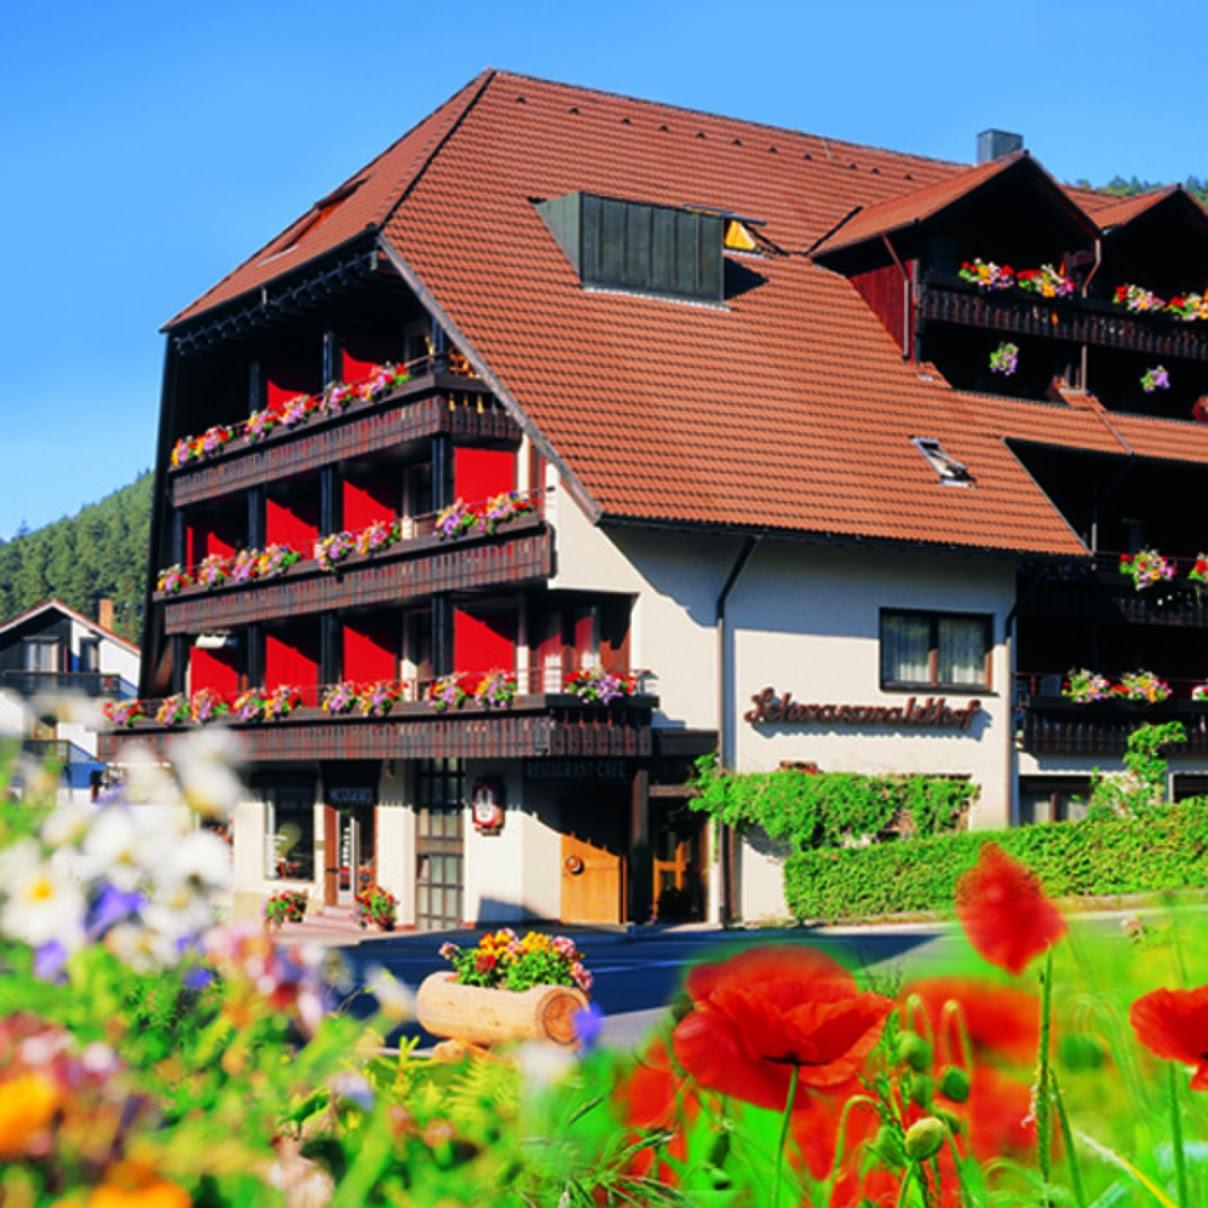 Restaurant "Hotel Schwarzwaldhof" in Enzklösterle